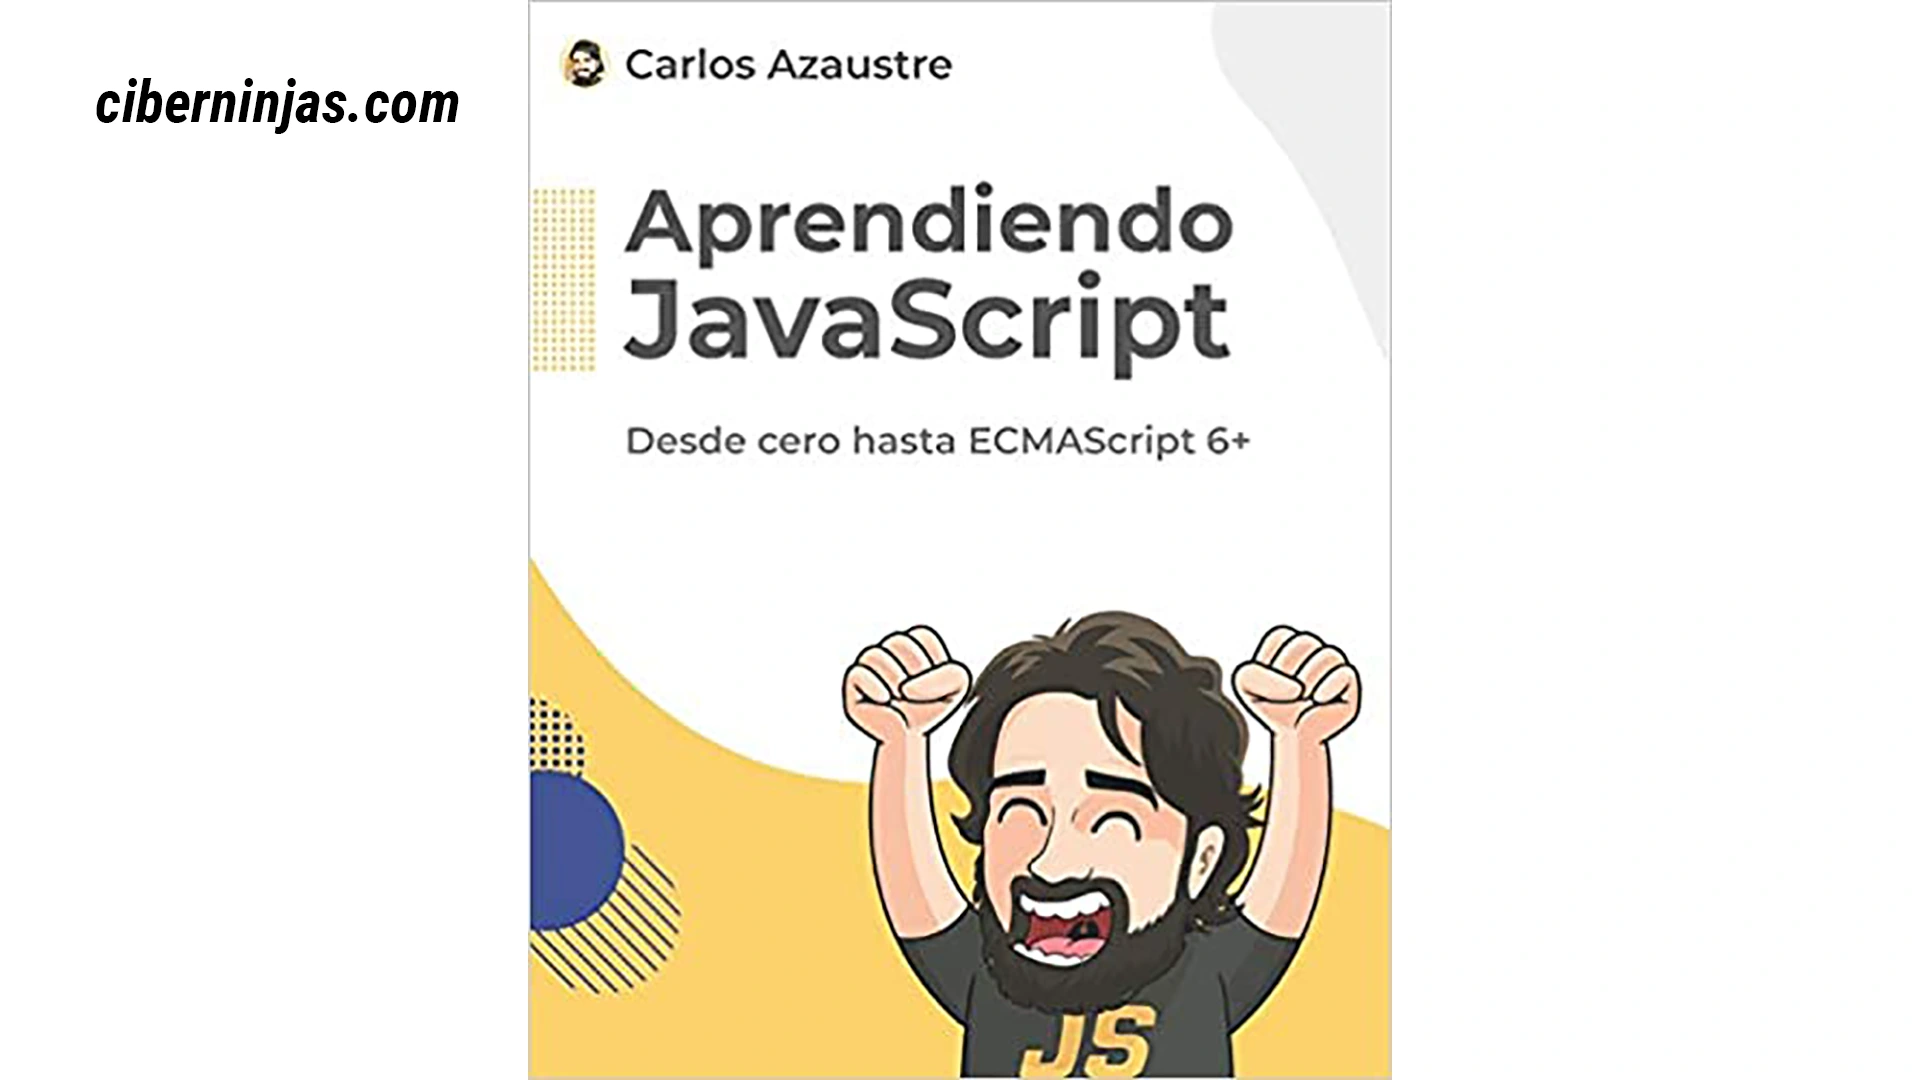 Aprendiendo JavaScript: Desde cero hasta ECMAScript de Carlos Azaustre